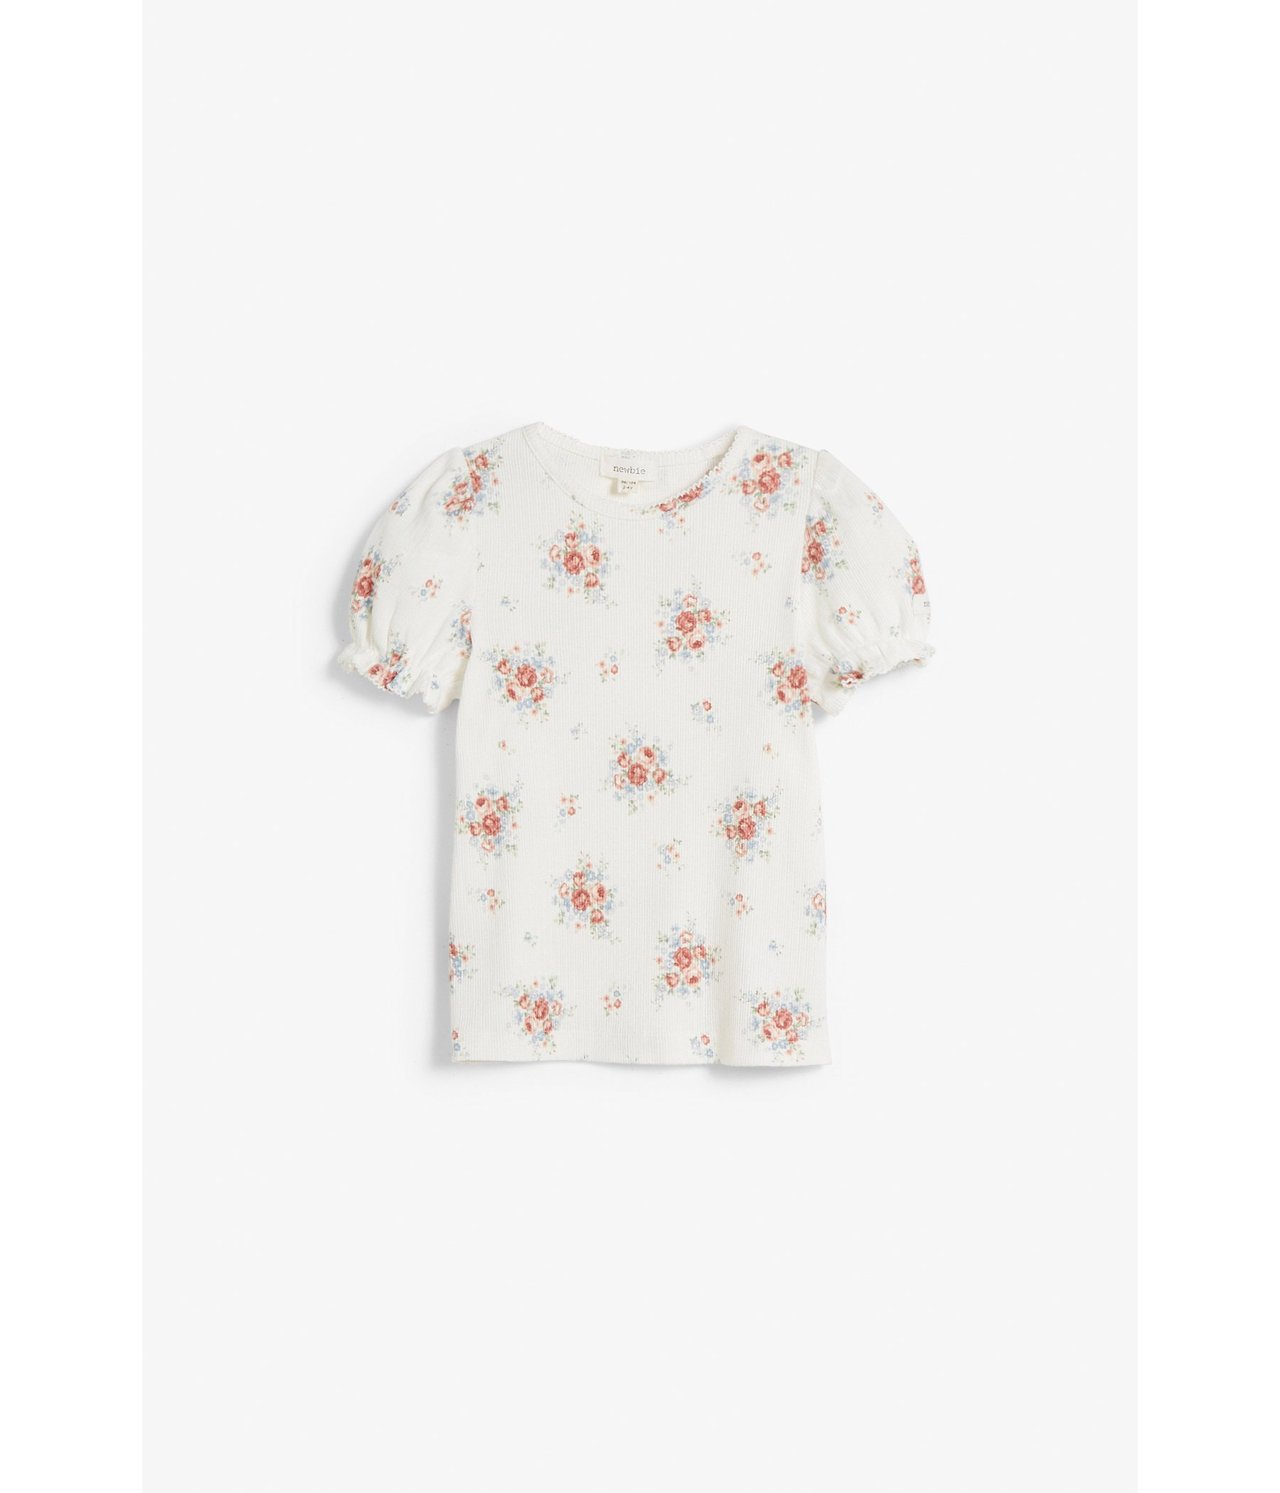 Kukkakuvioinen paita, jossa on puhvihihat